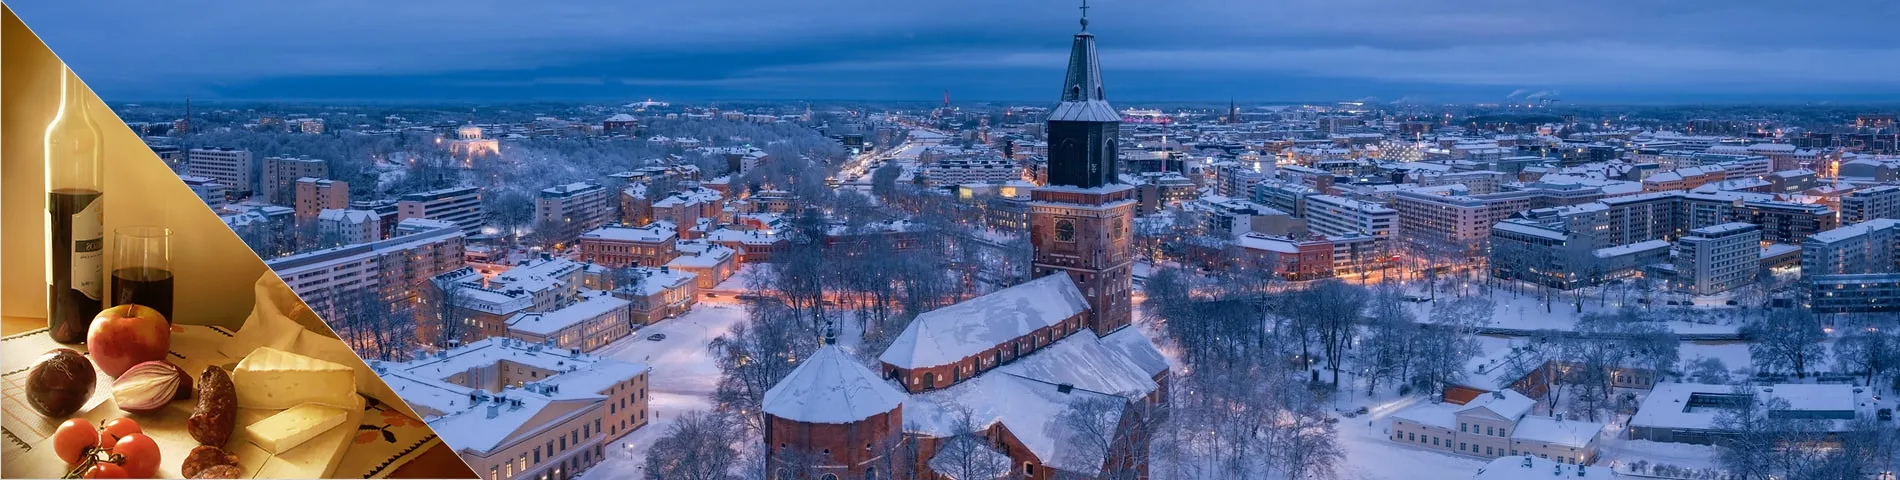 Turku - Finnish & Culture